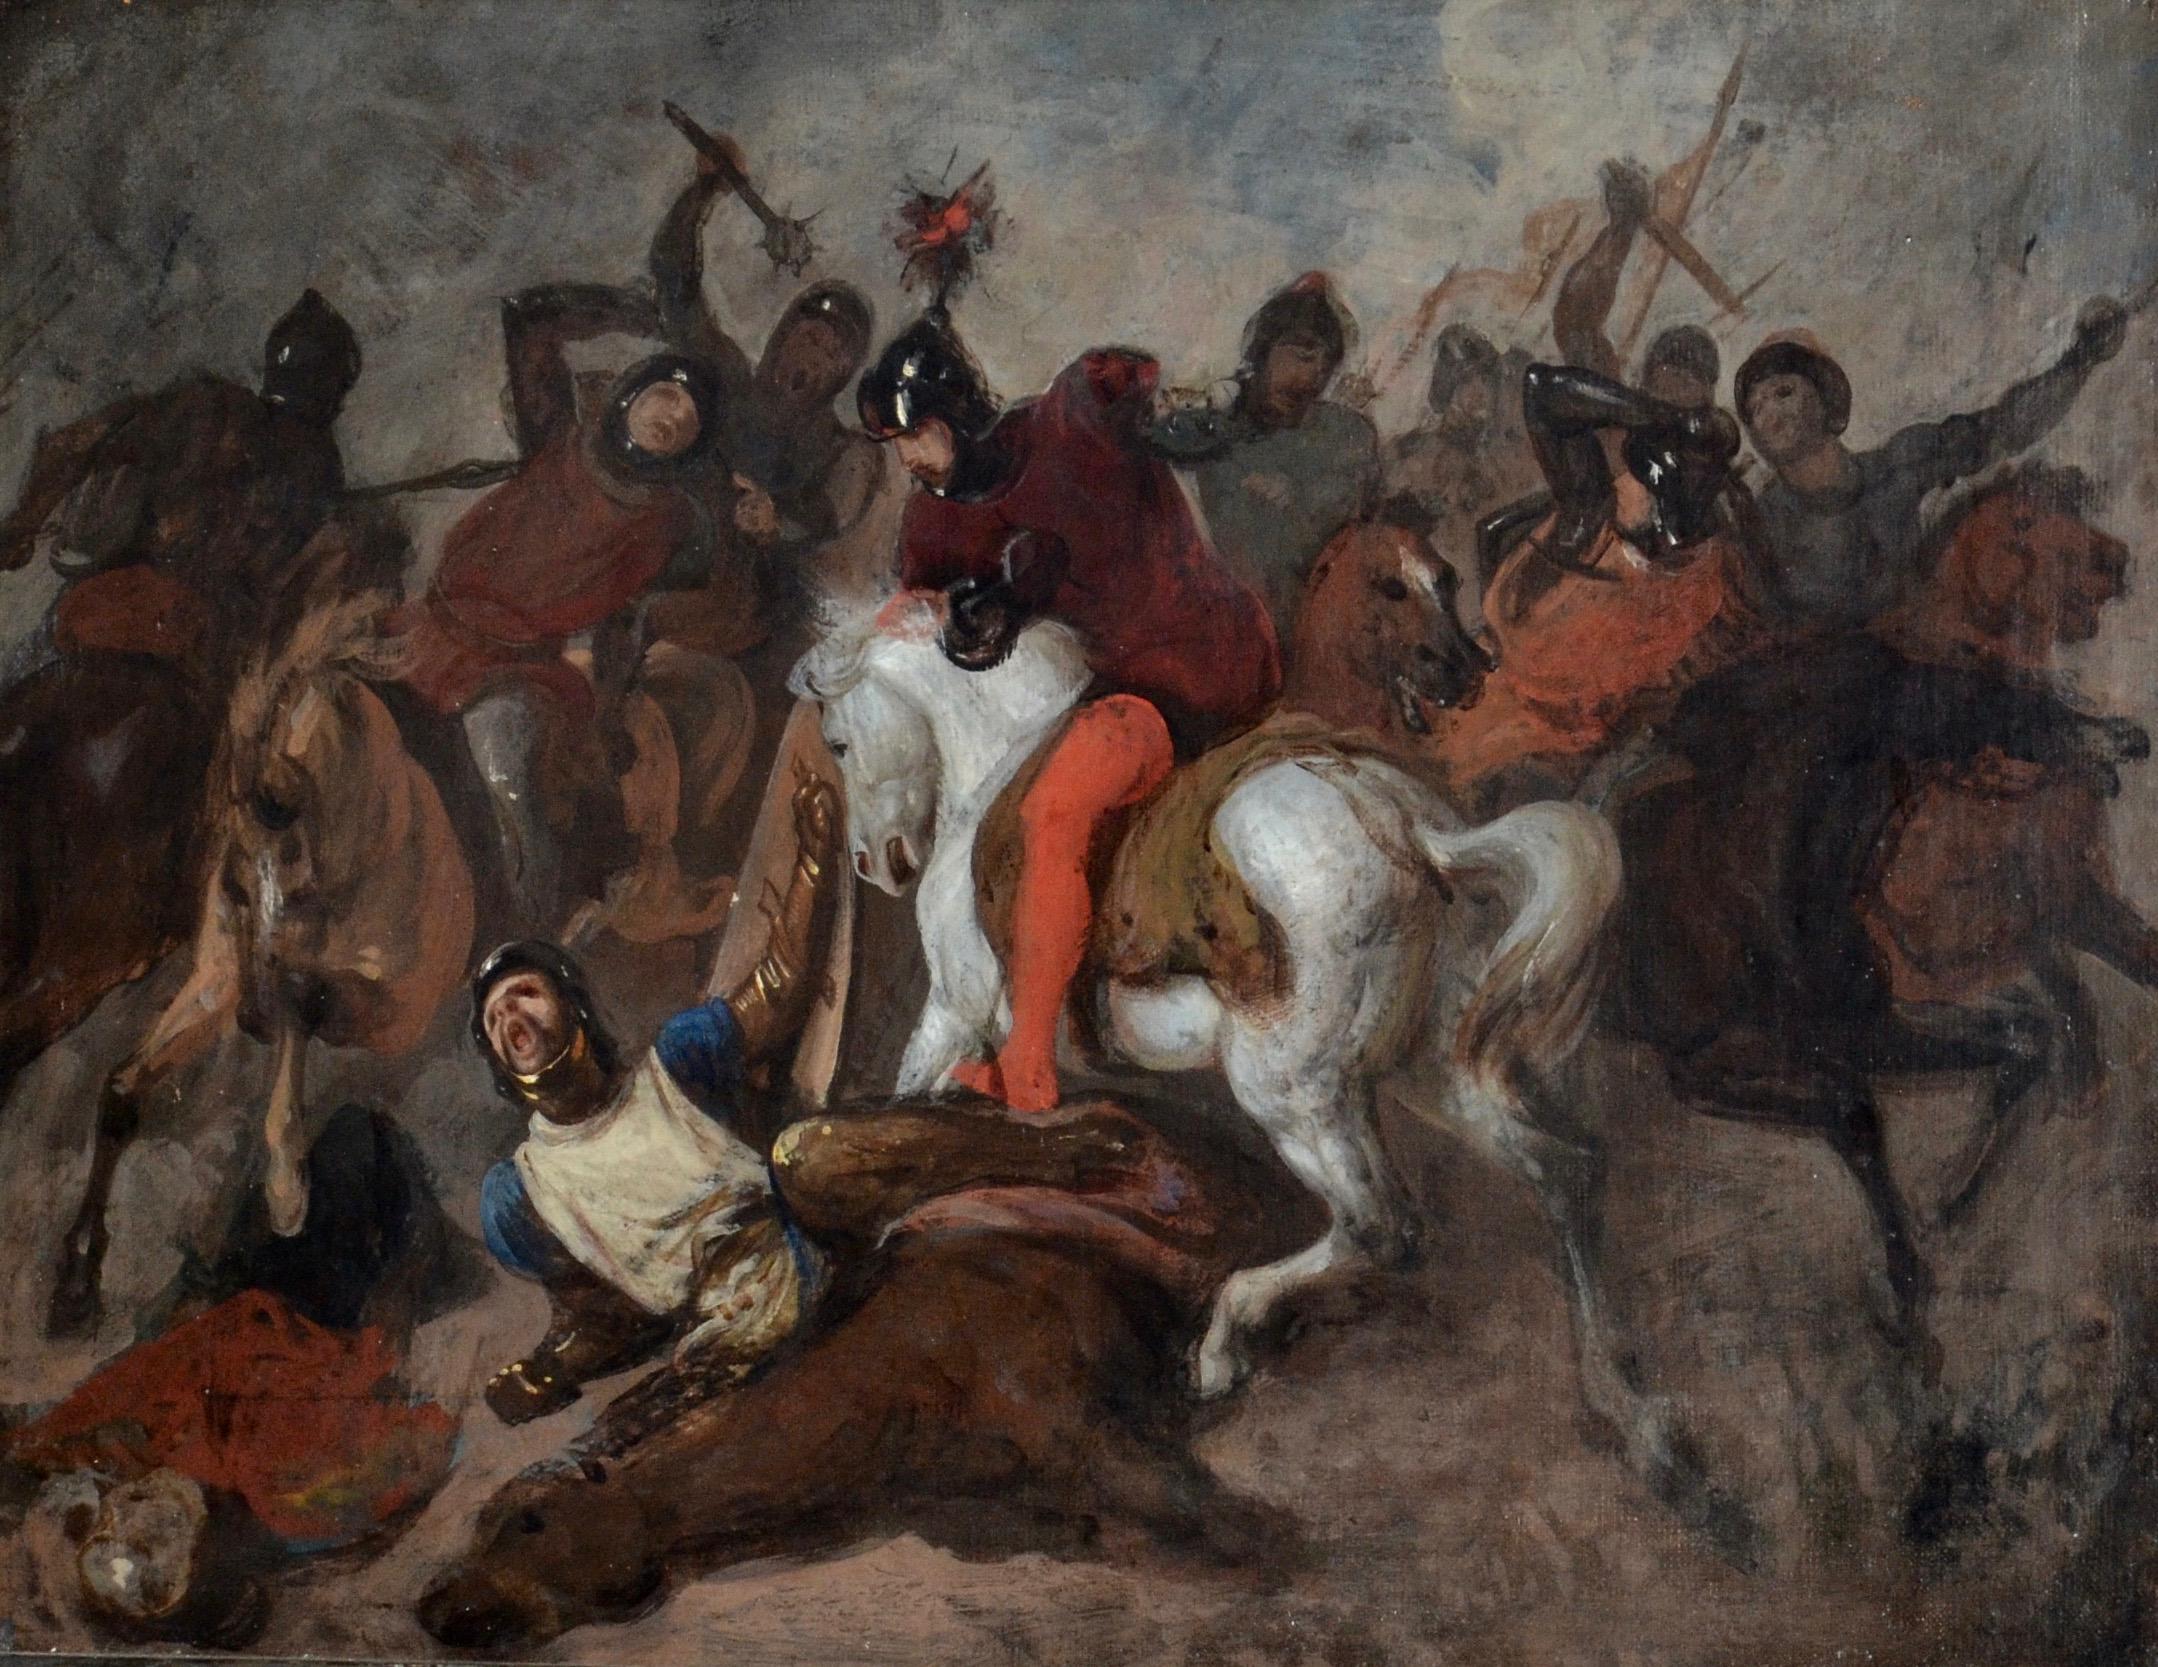 La bataille - Soldats chevauchant des chevaux à la chaleur d'une bataille violente 19e siècle